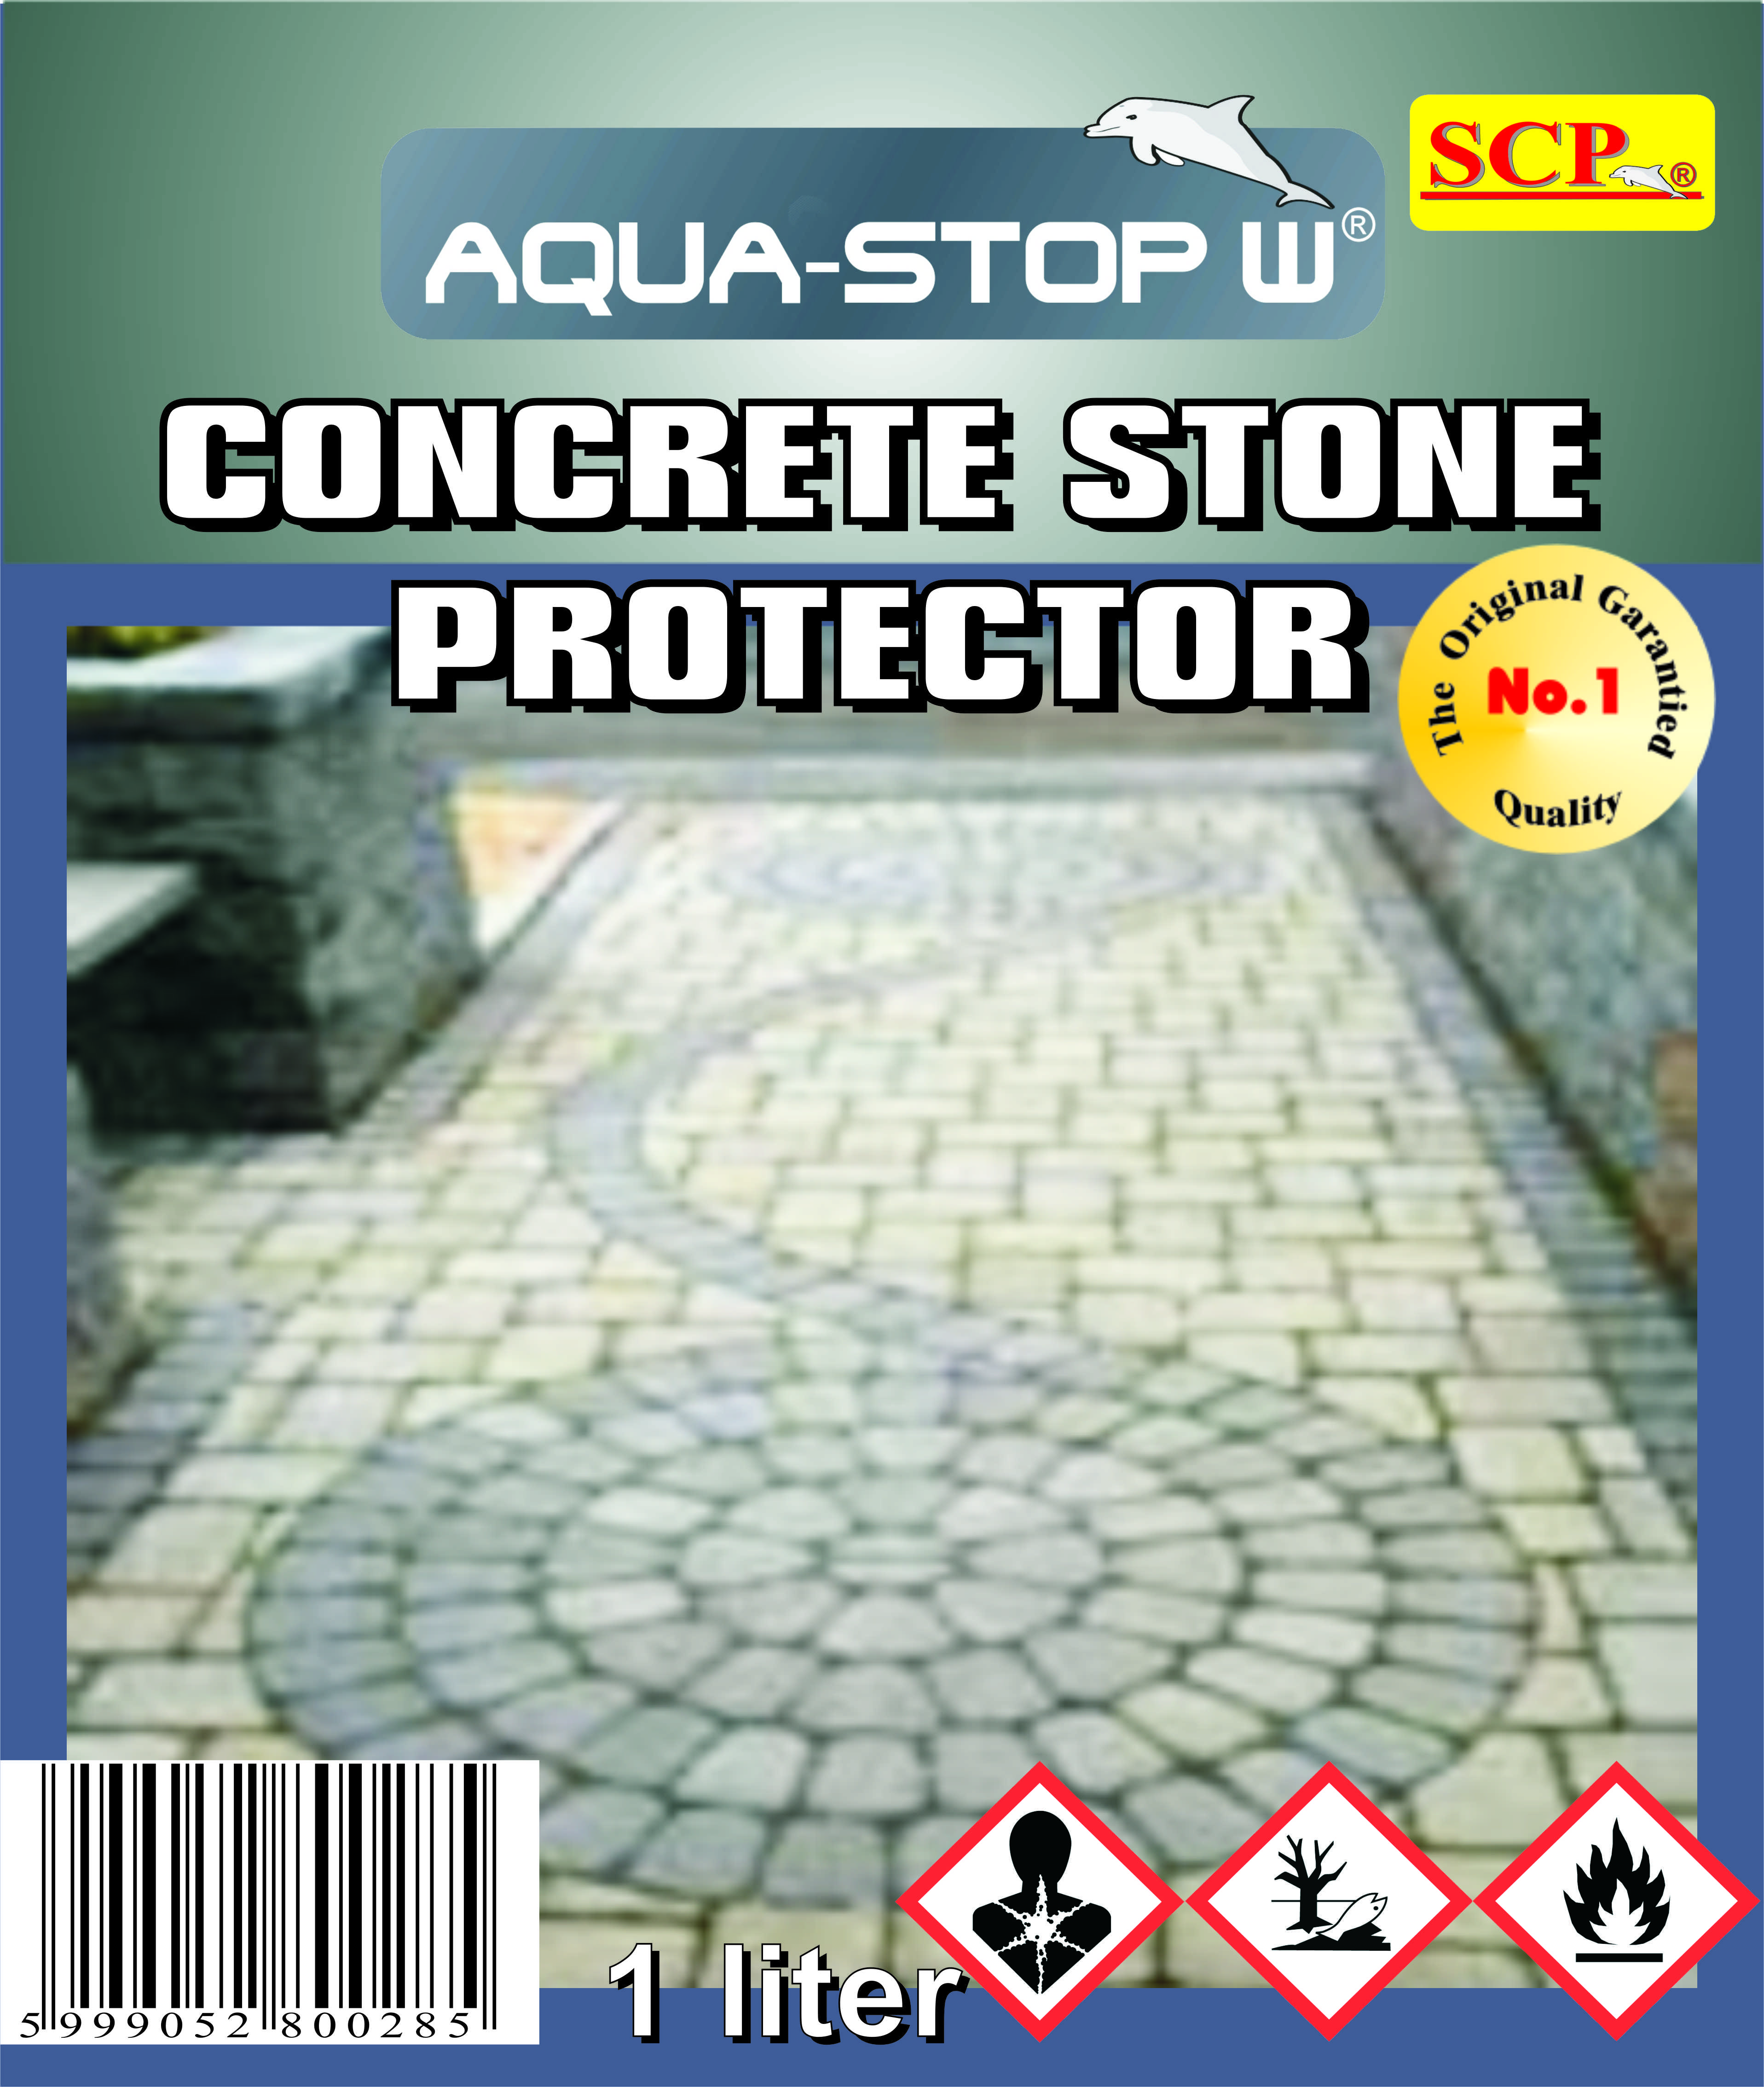 Concrete Stone Protector